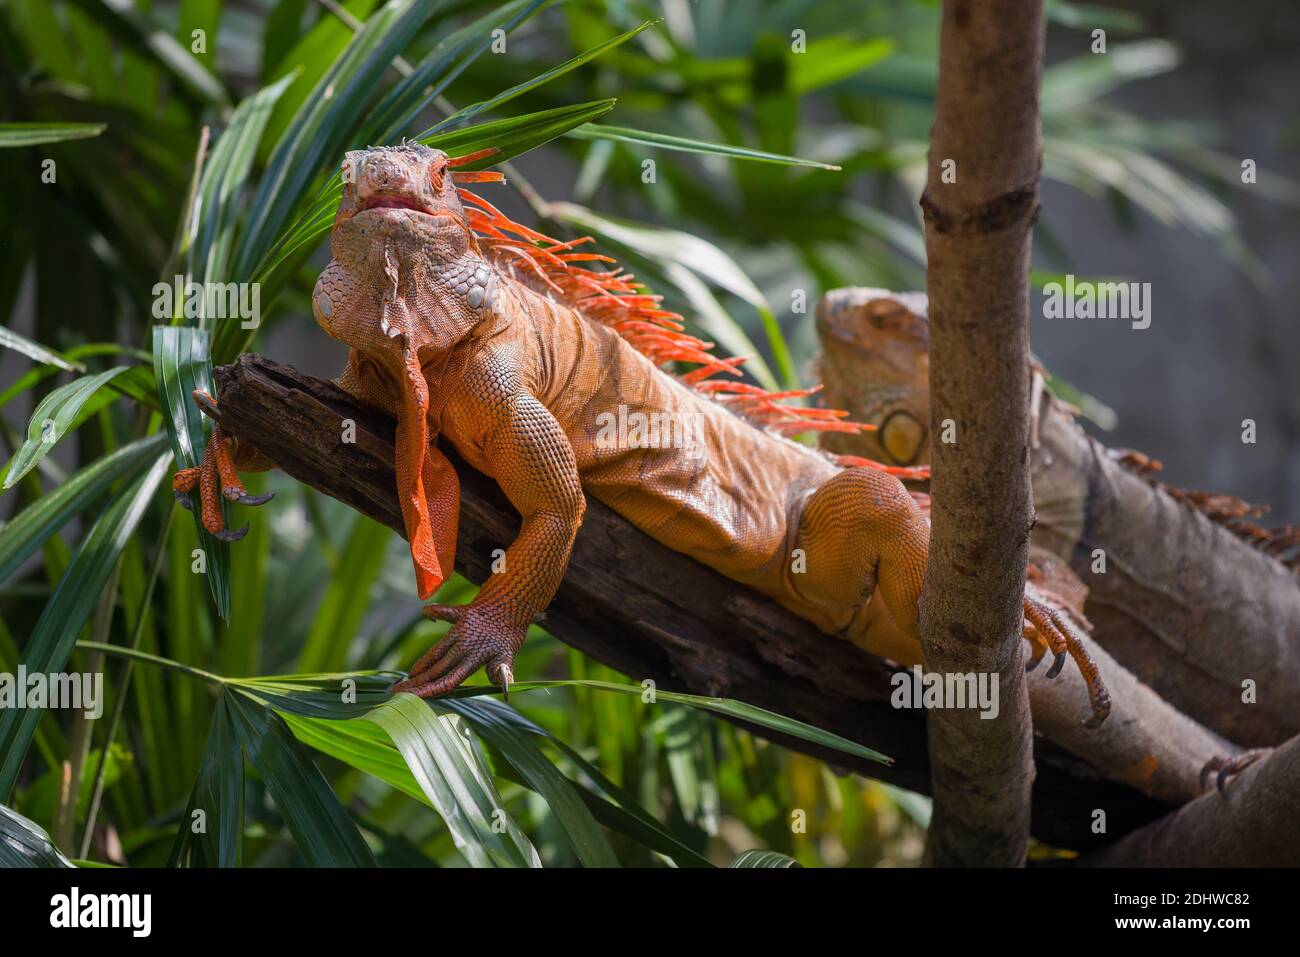 Common Iguana (Iguana iguana) on a dry tree Stock Photo